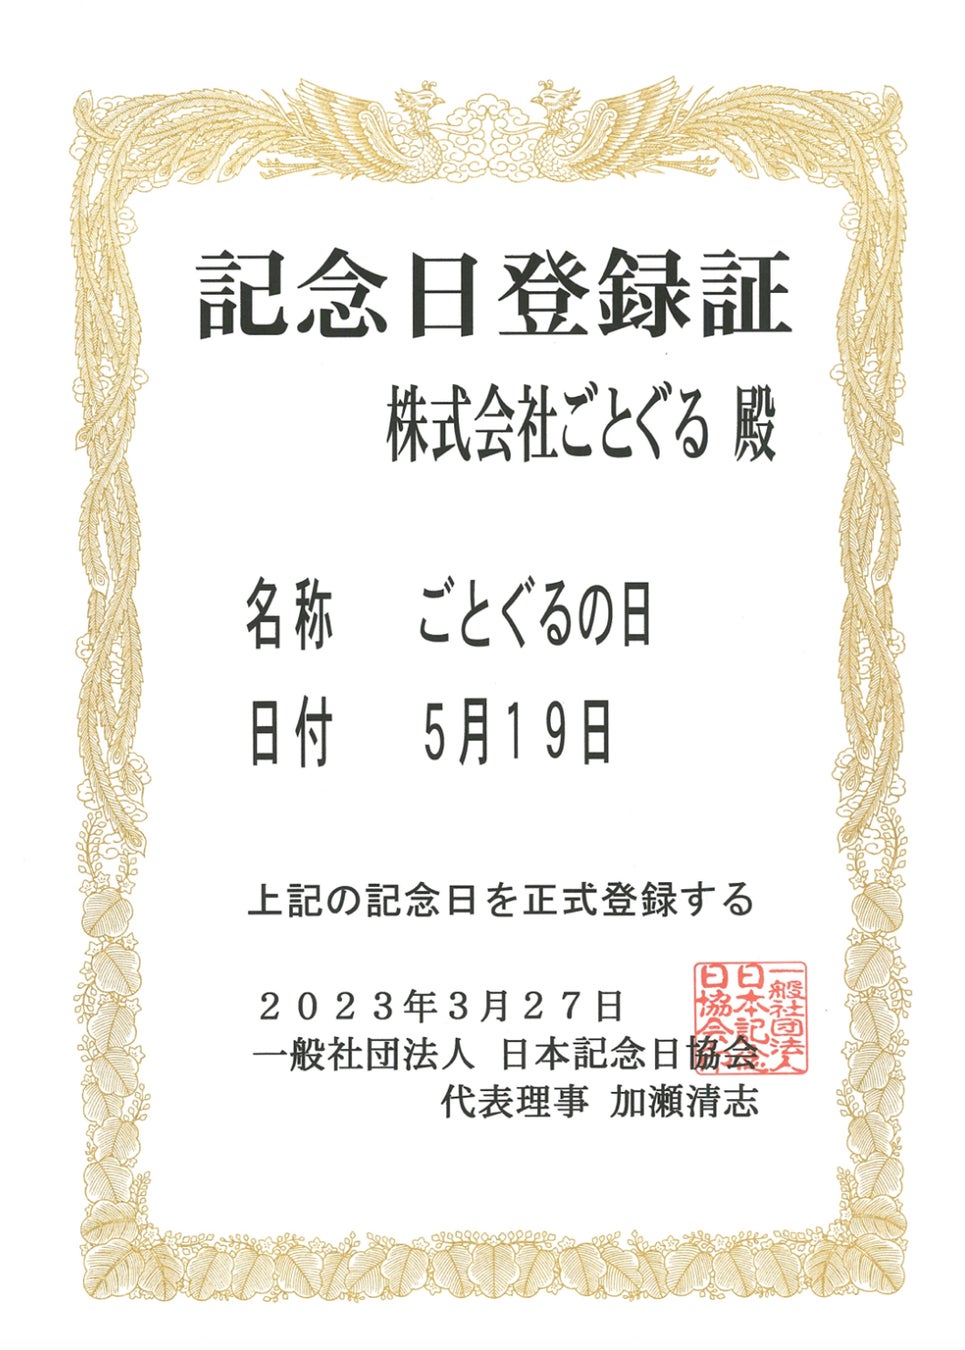 錦を元気に！
名古屋の「鮨 香斗」にて寿司3貫セットをプレゼント！
繁華街「錦3」の支援のため、5月7日に先着1,000名に実施